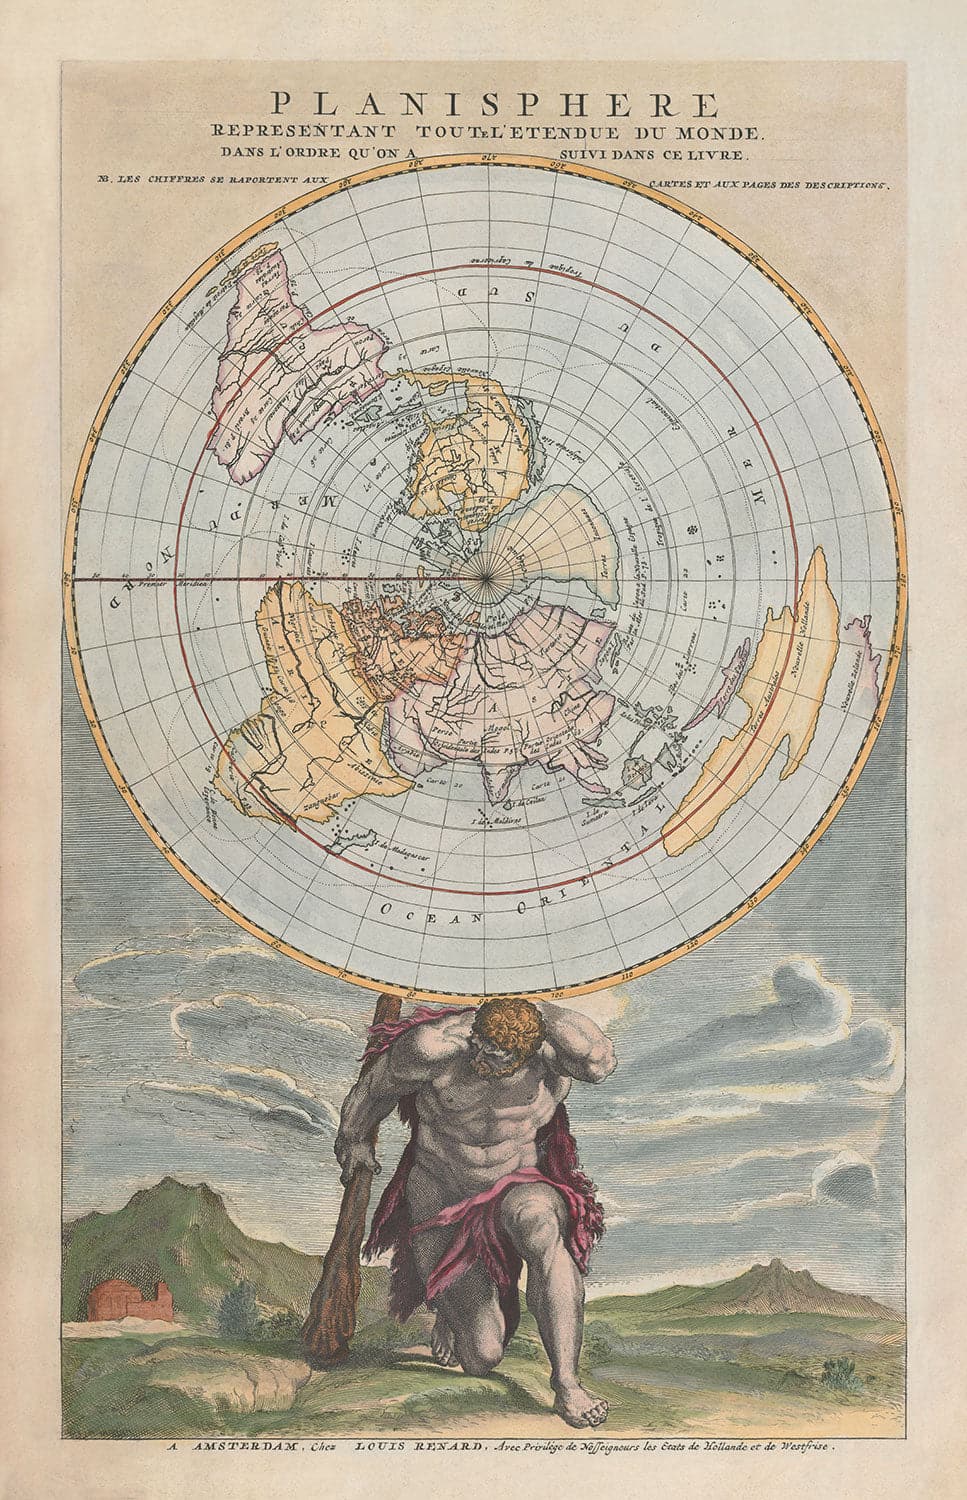 Alte flache Earth-Planisphere-Weltkarte, 1715 von Louis Renard - Cassini-Projektion - Atlas zuckte die Achseln